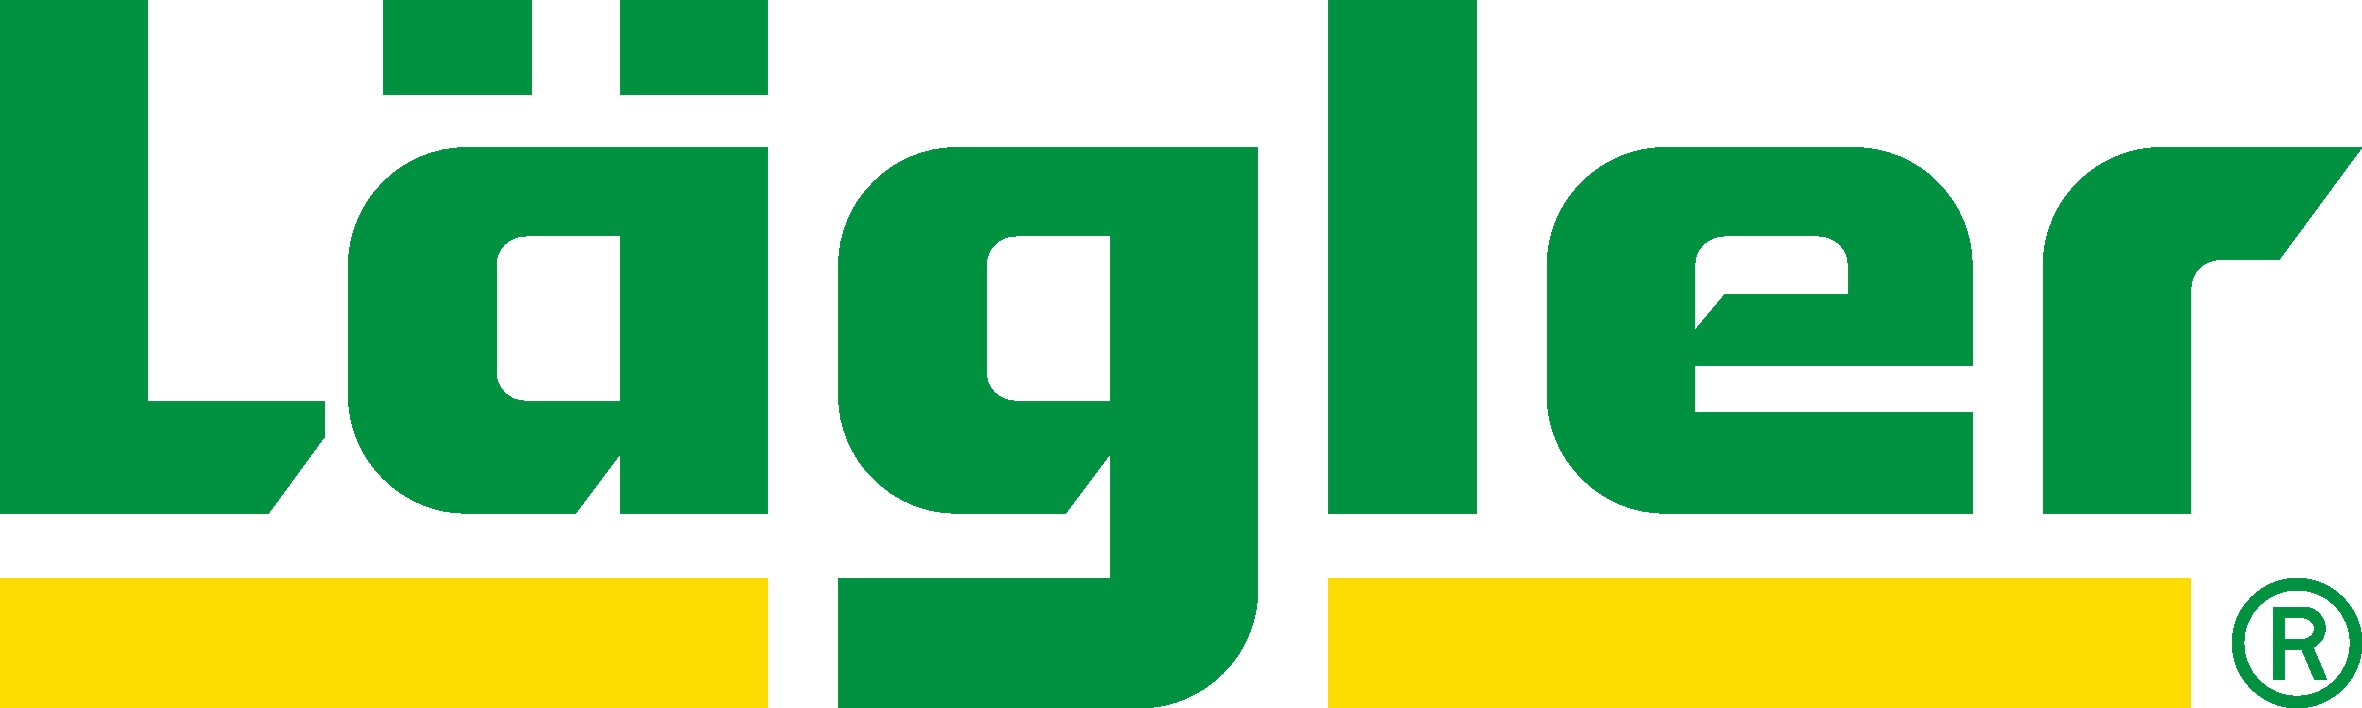 Logo Lägler